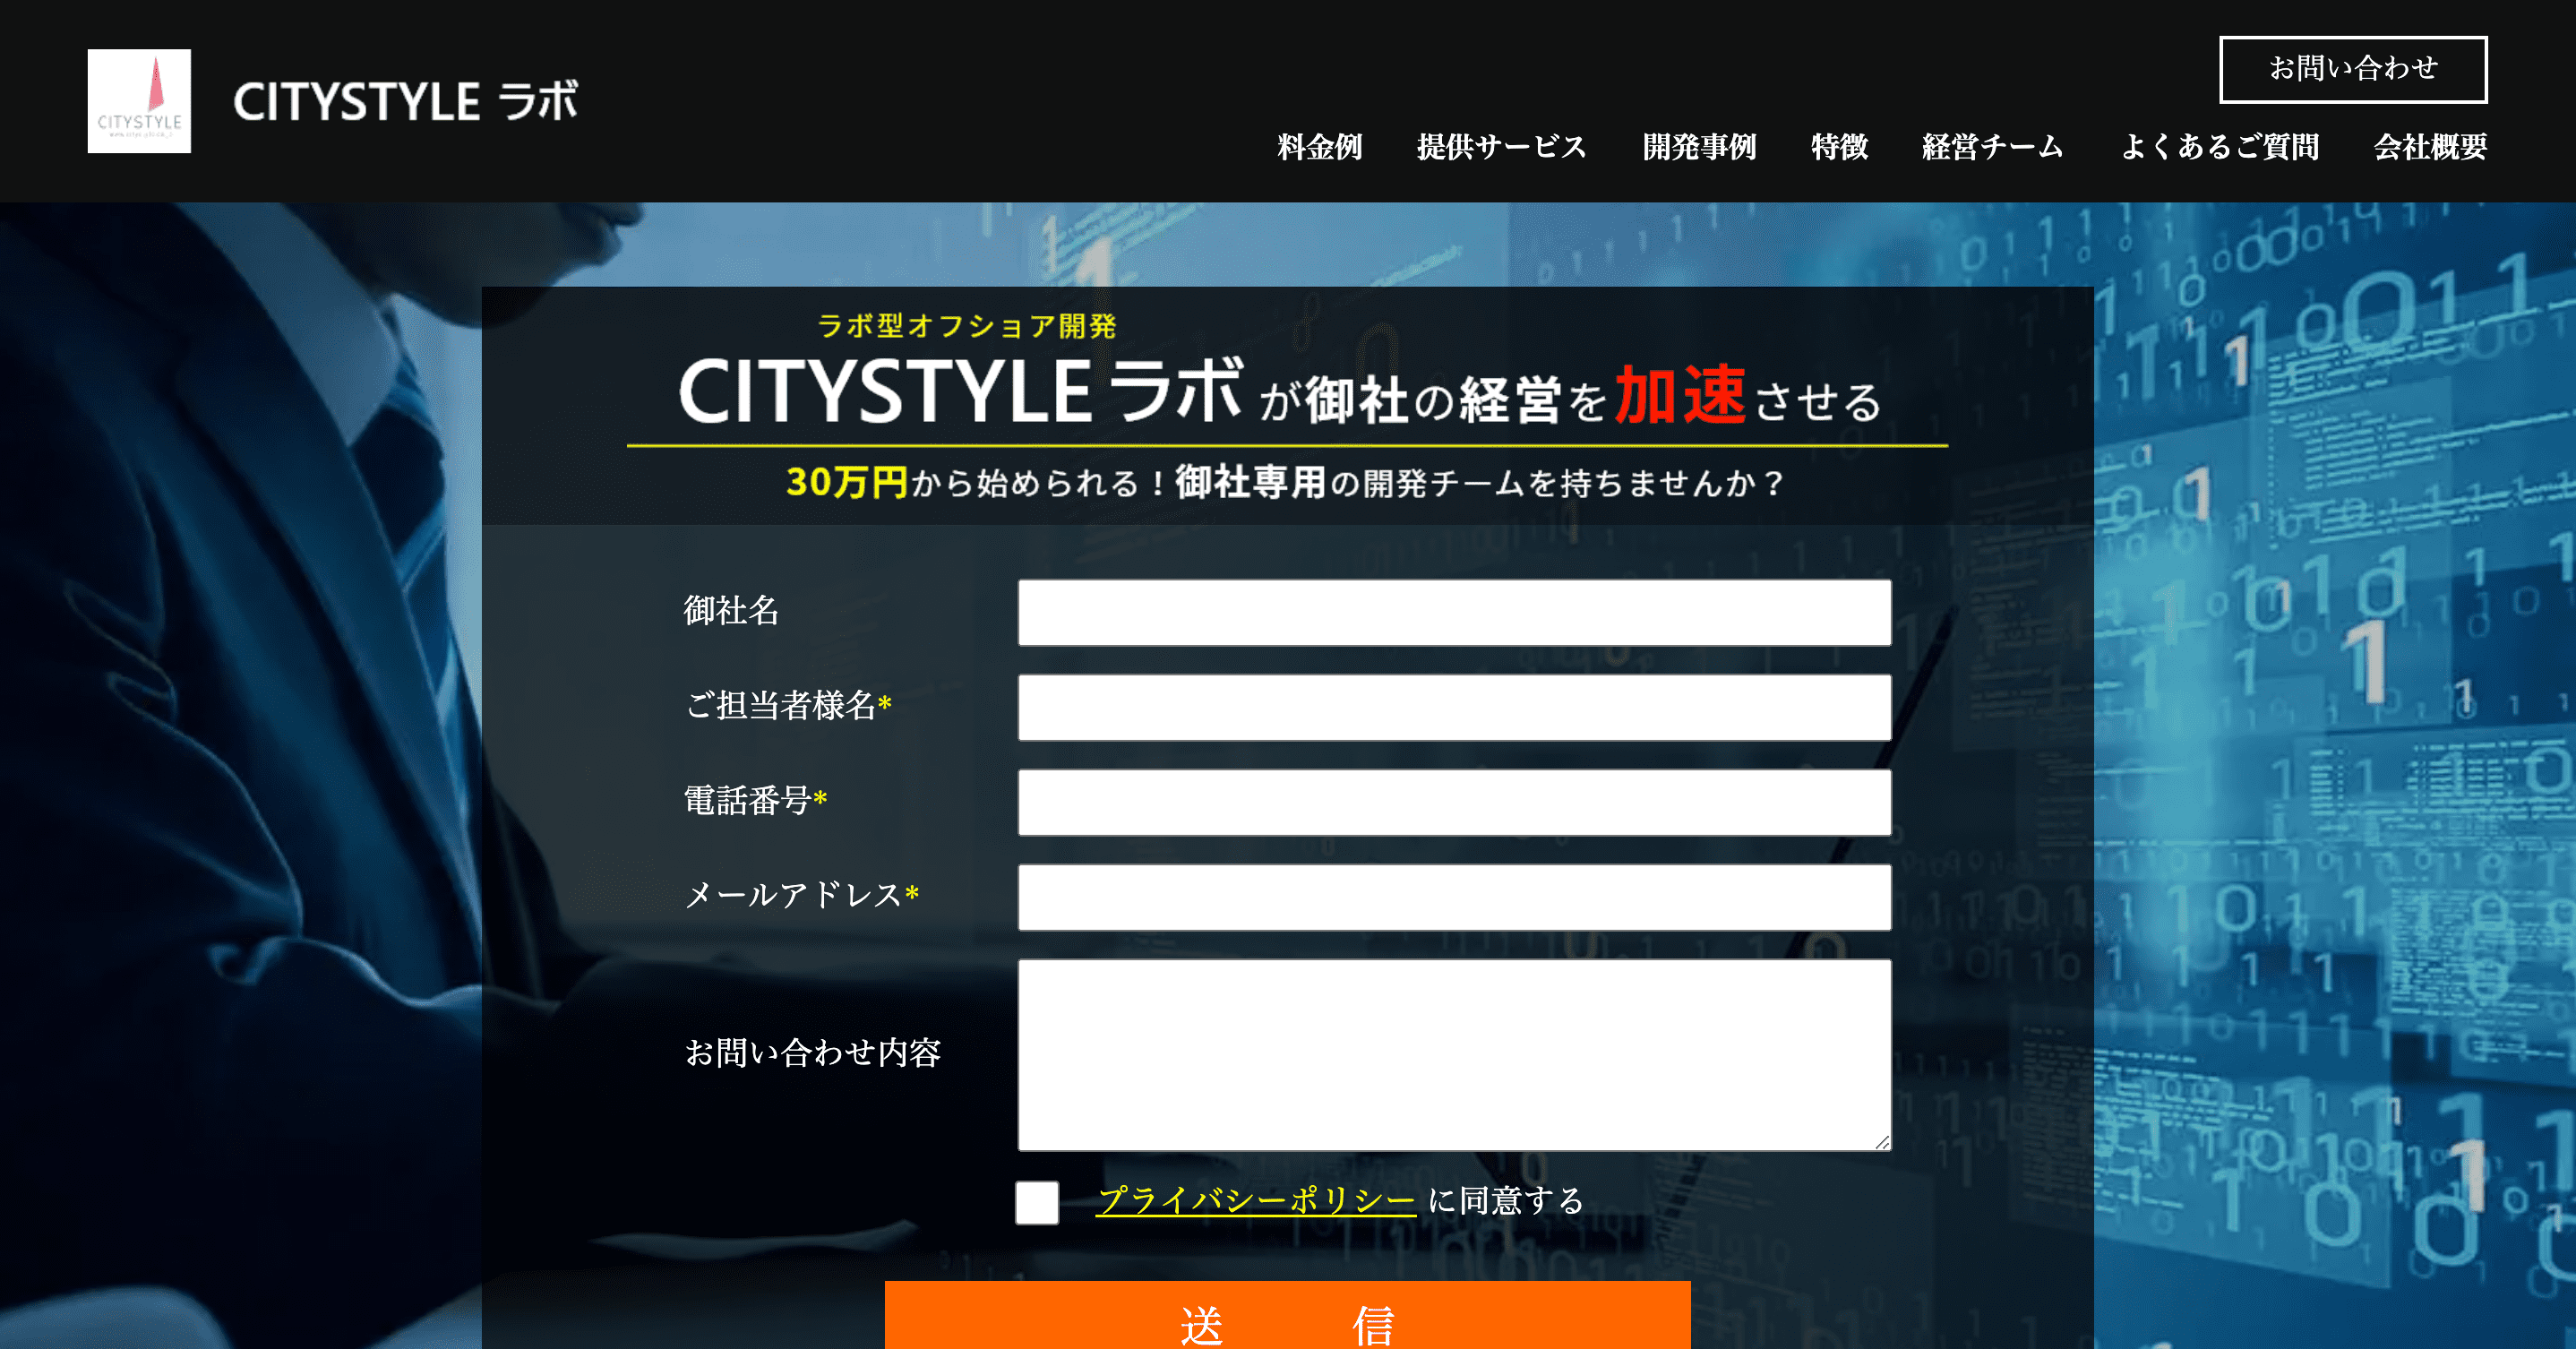 citystyle image